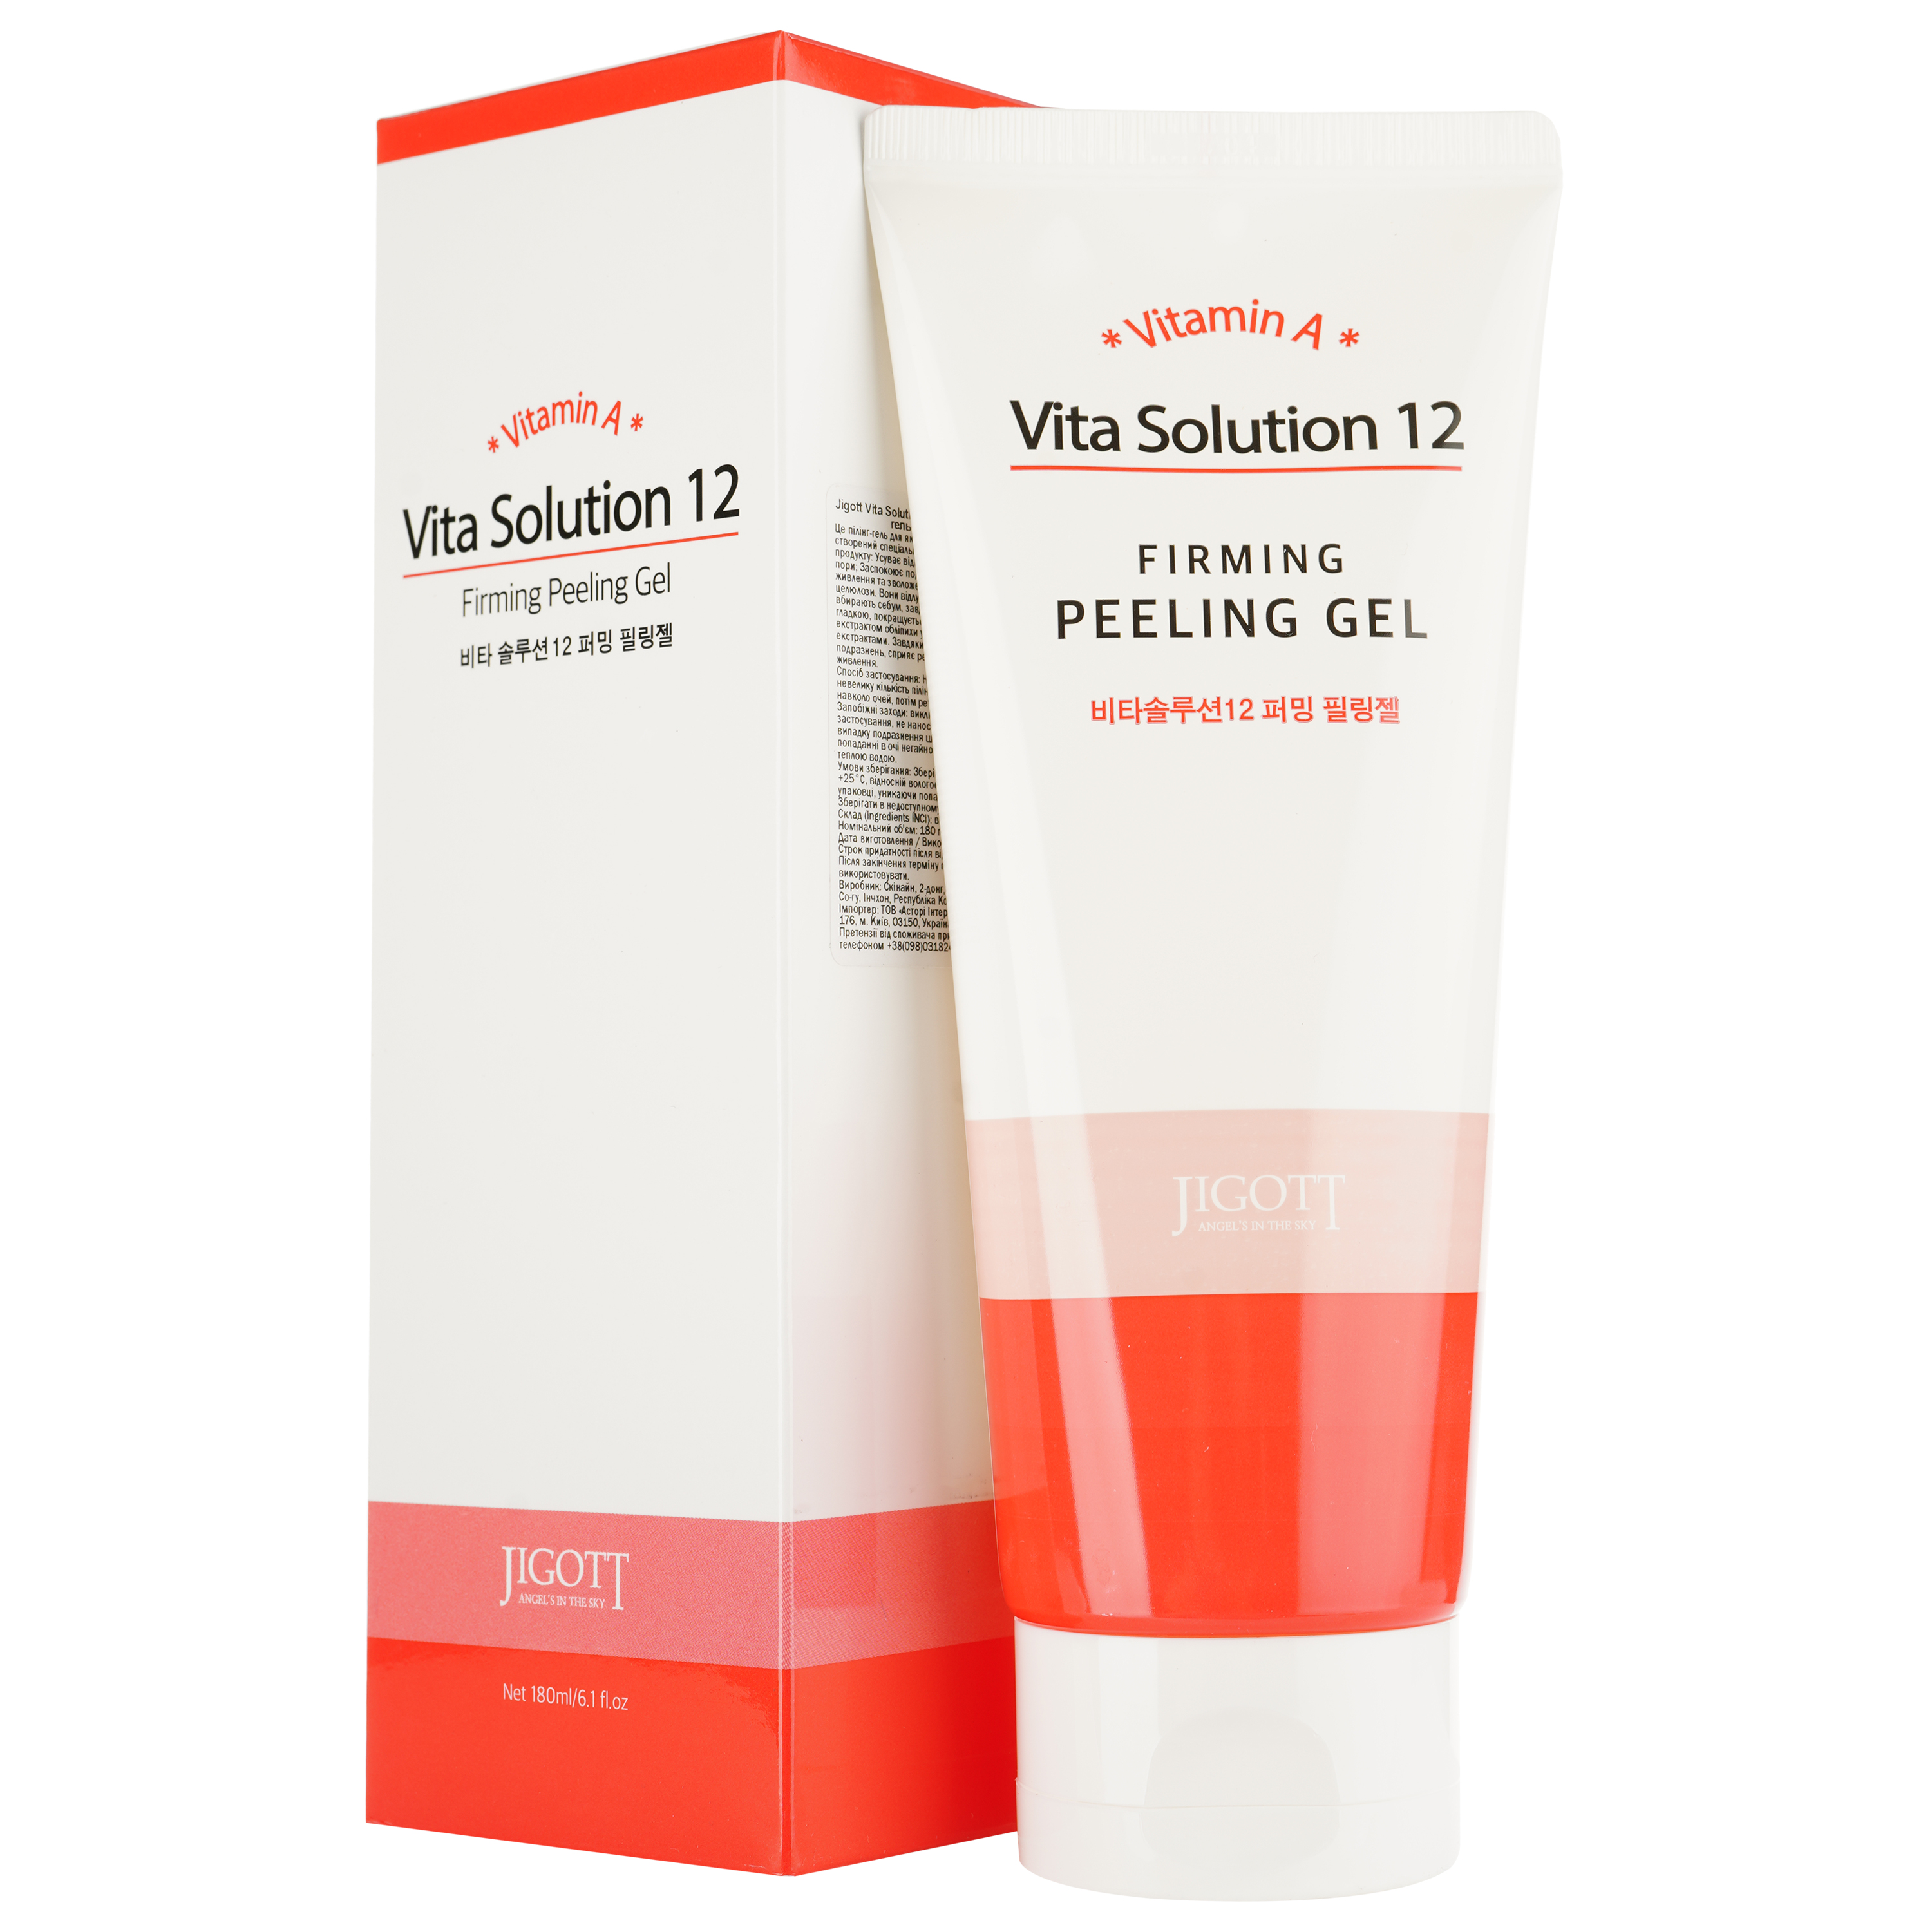 Пилинг-гель для лица Jigott Vita Solution 12 Firming Peeling Gel, 180 мл - фото 1